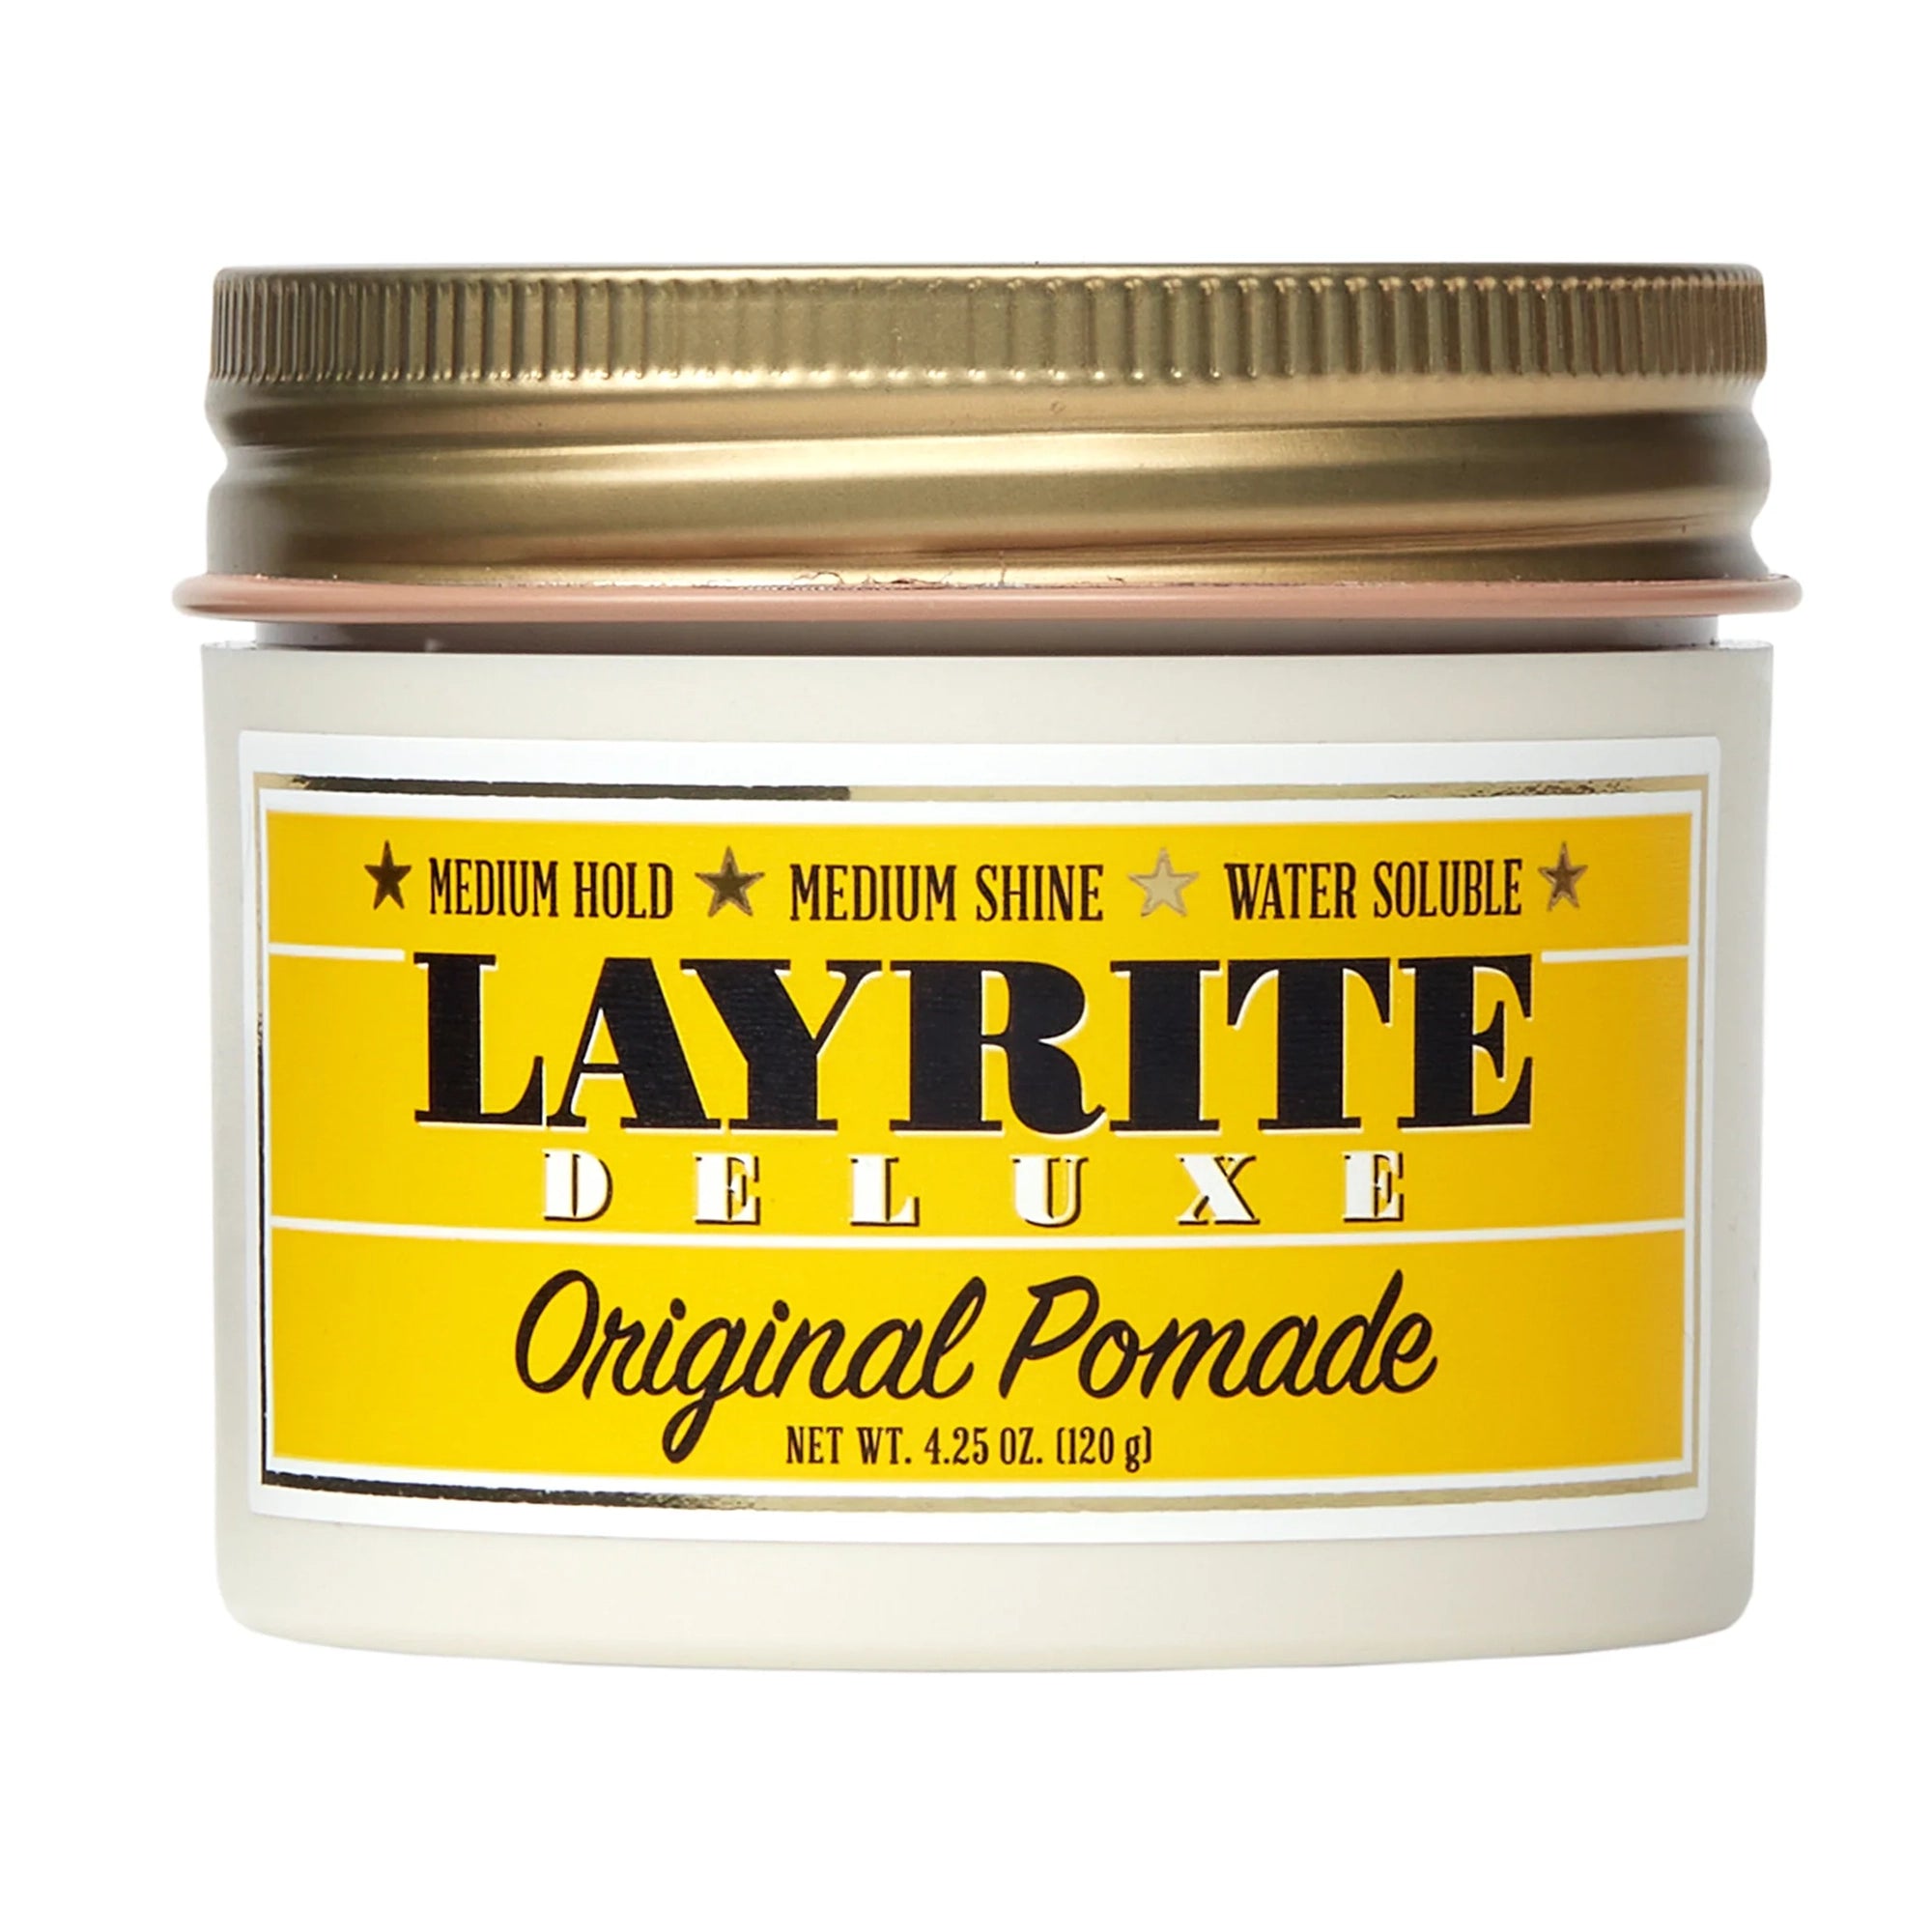 Layrite Original Pomade / 4 OZ